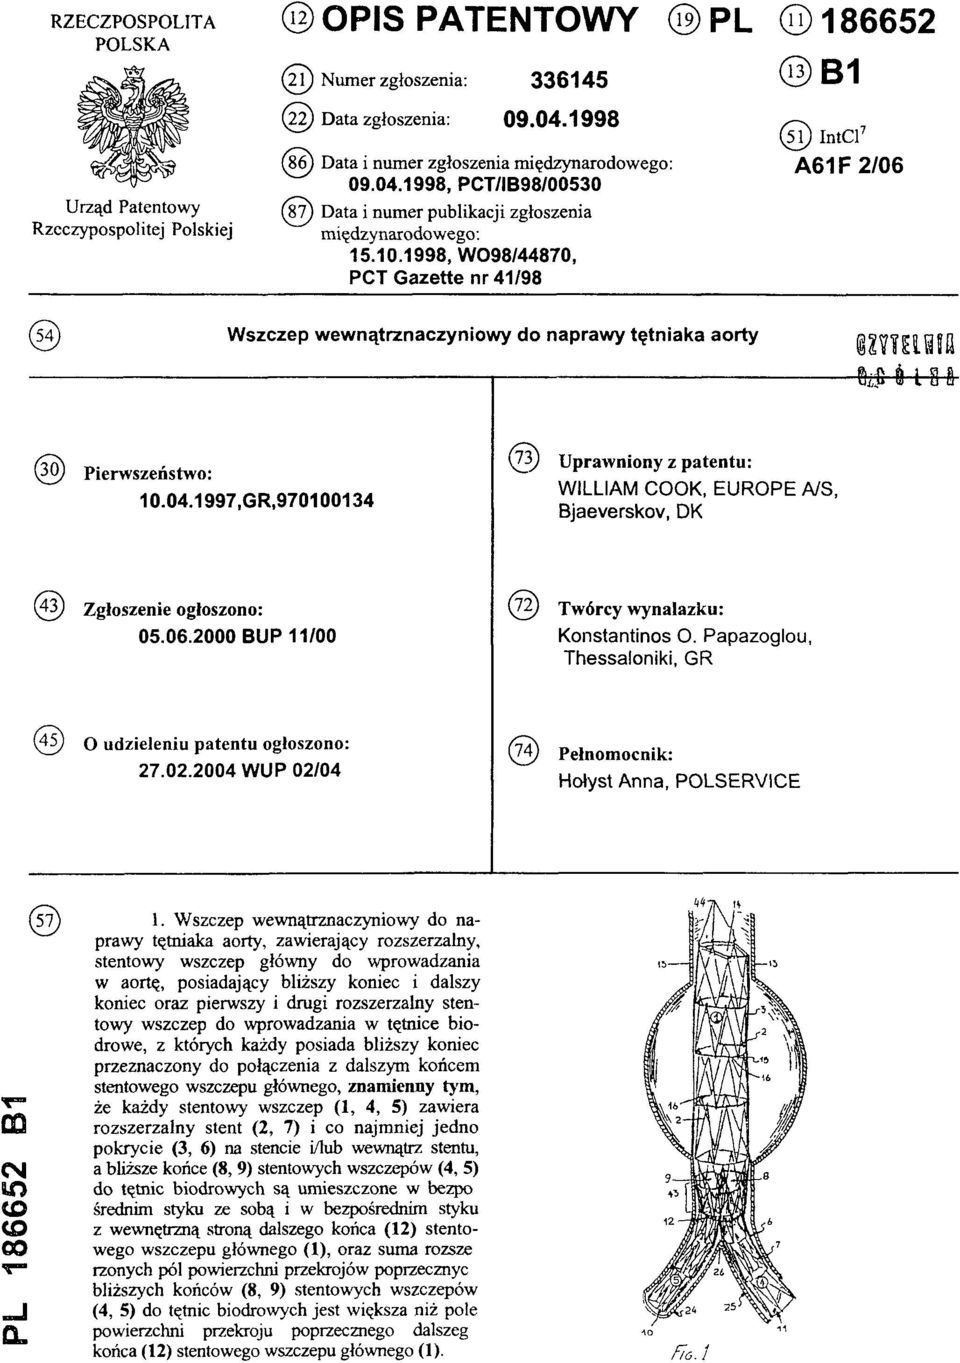 1998, W098/44870, PCT Gazette nr 41/98 (51) IntCl7 A61F2/06 (54)Wszczep wewnątrznaczyniowy do naprawy tętniaka aorty (30) Pierwszeństwo: 10.04.1997.